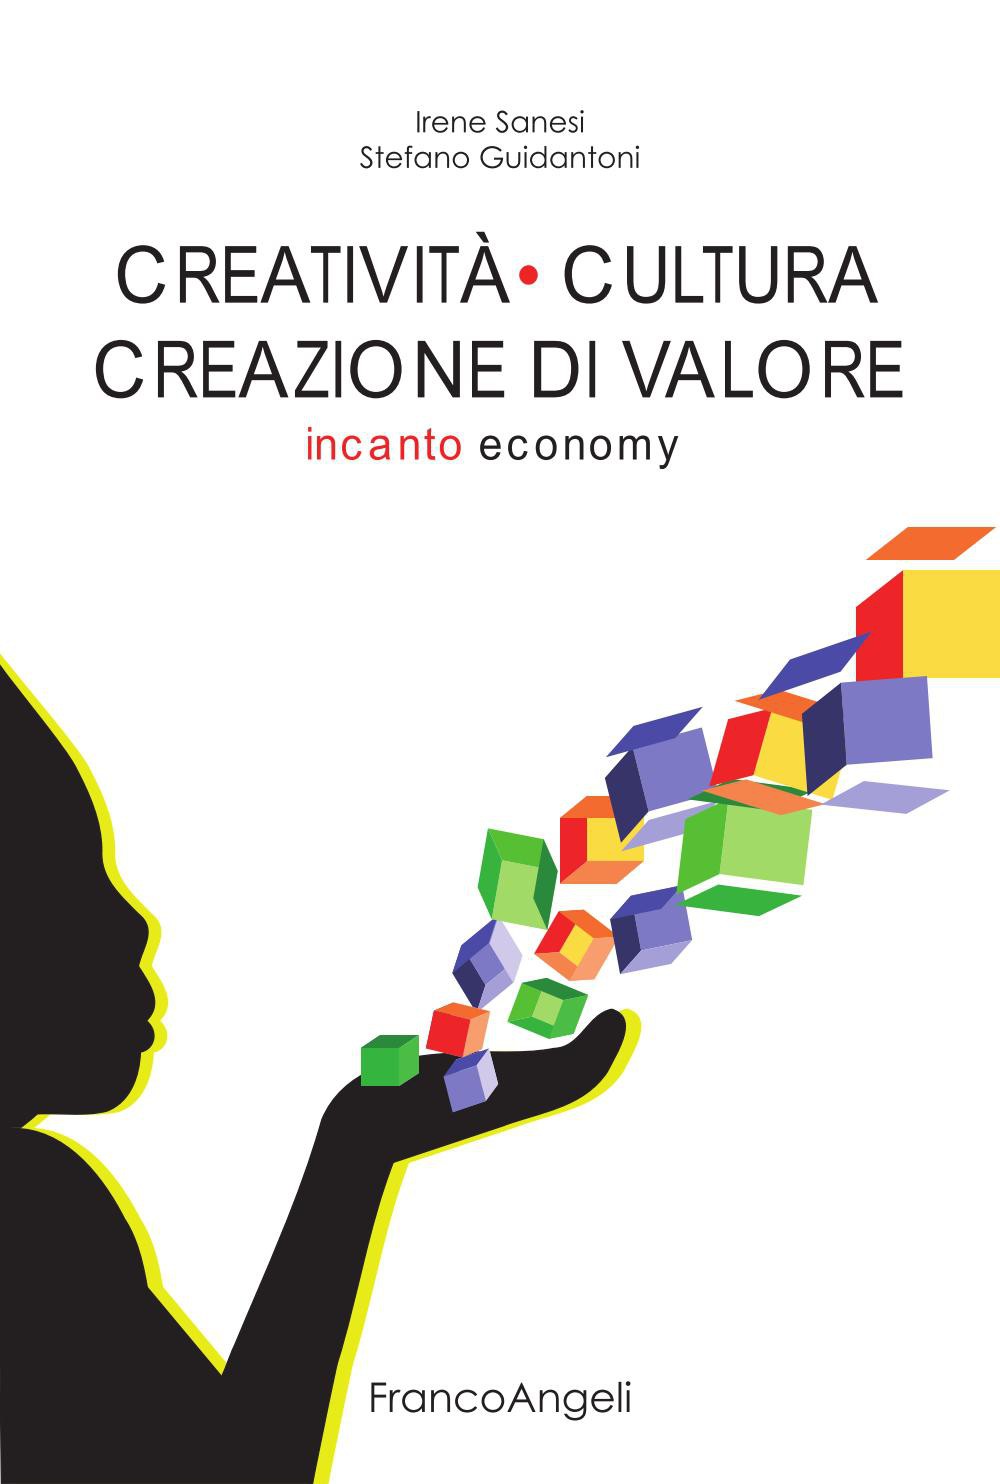 Irene Sanesi & Stefano Guidantoni, Creatività cultura creazione di valore. Incanto economy (Franco Angeli)